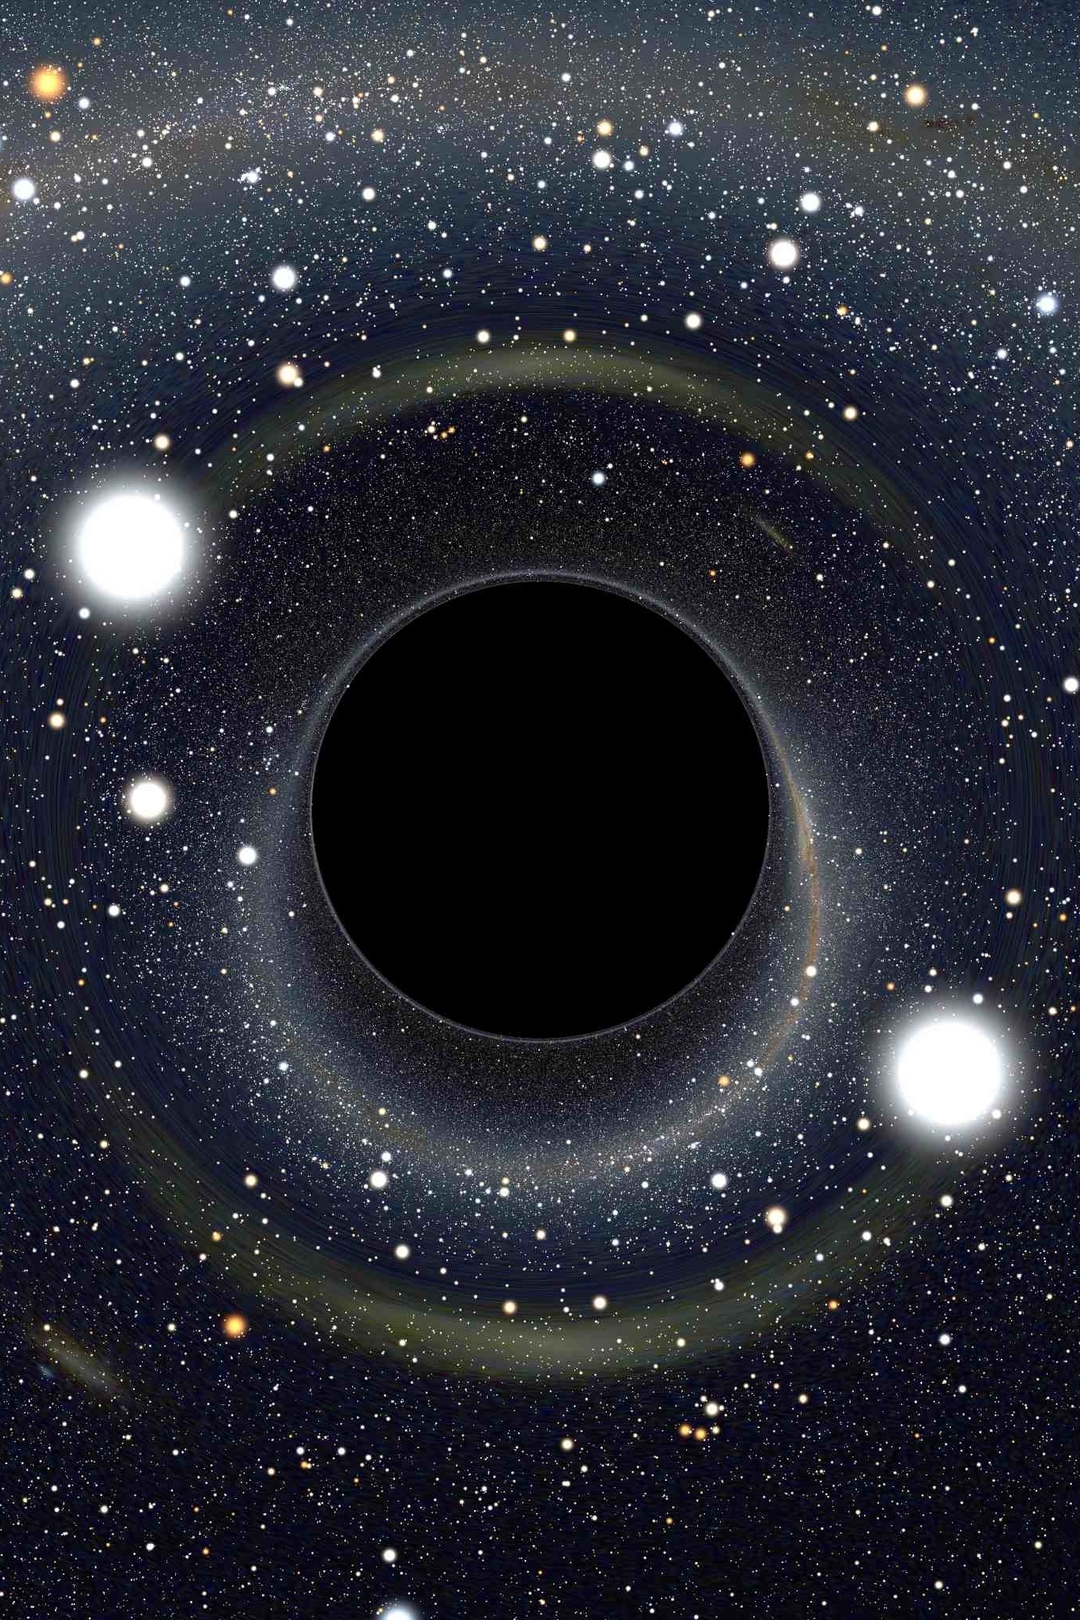 Картинка: Круг, свет, звёзды, космос, чёрная дыра, в центре